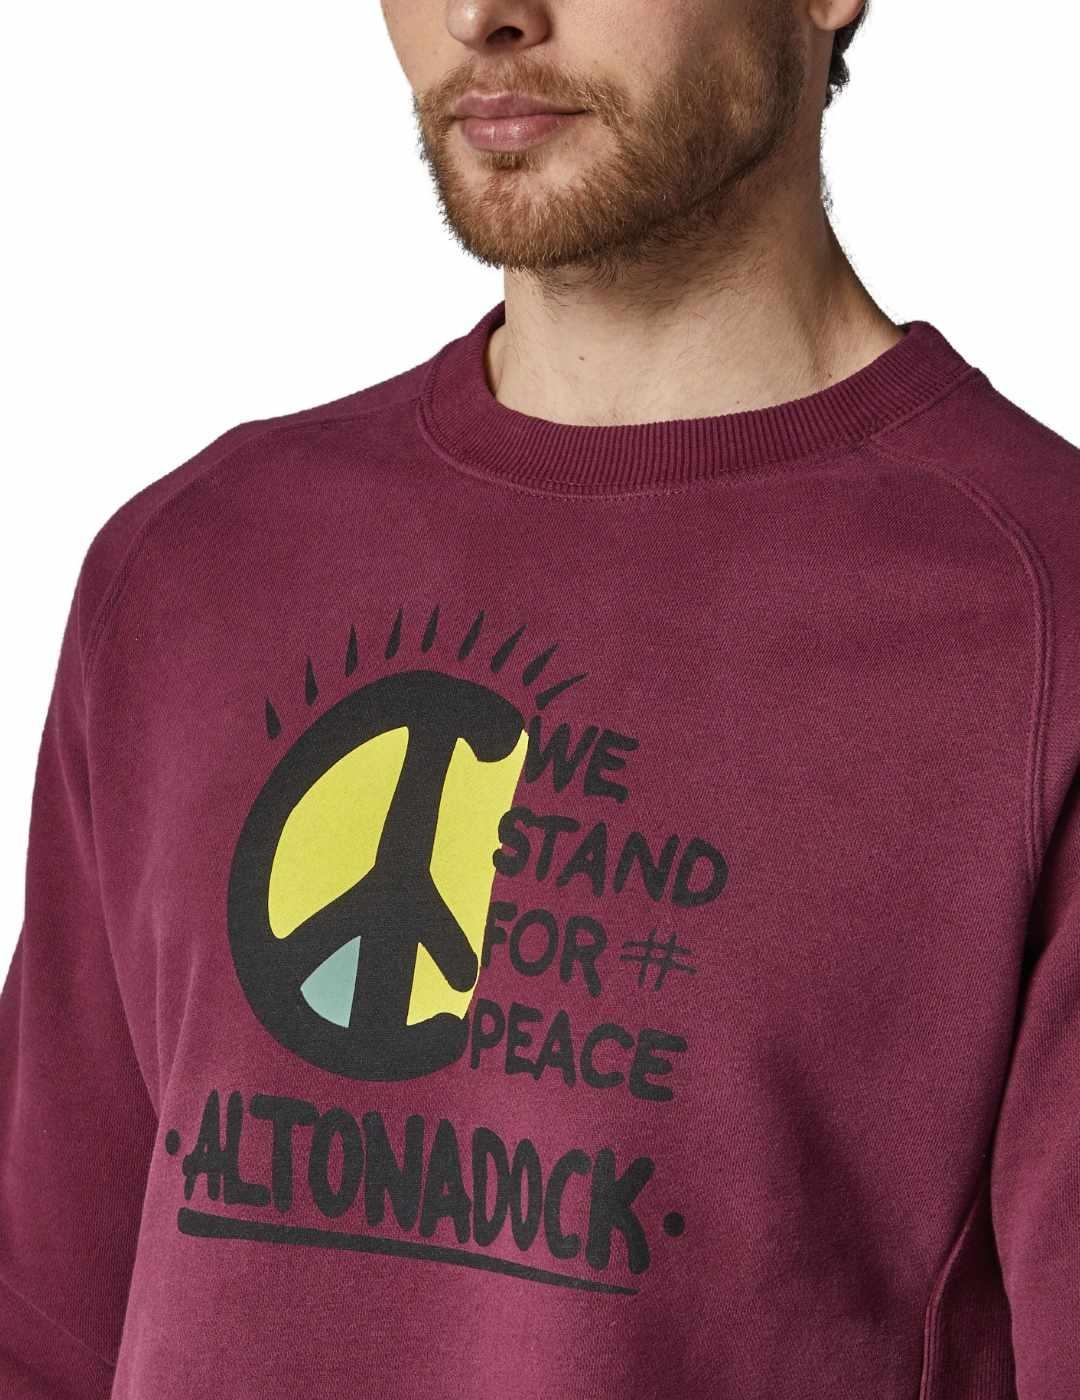 Sudadera Altonadock granate dibujo peace para hombre